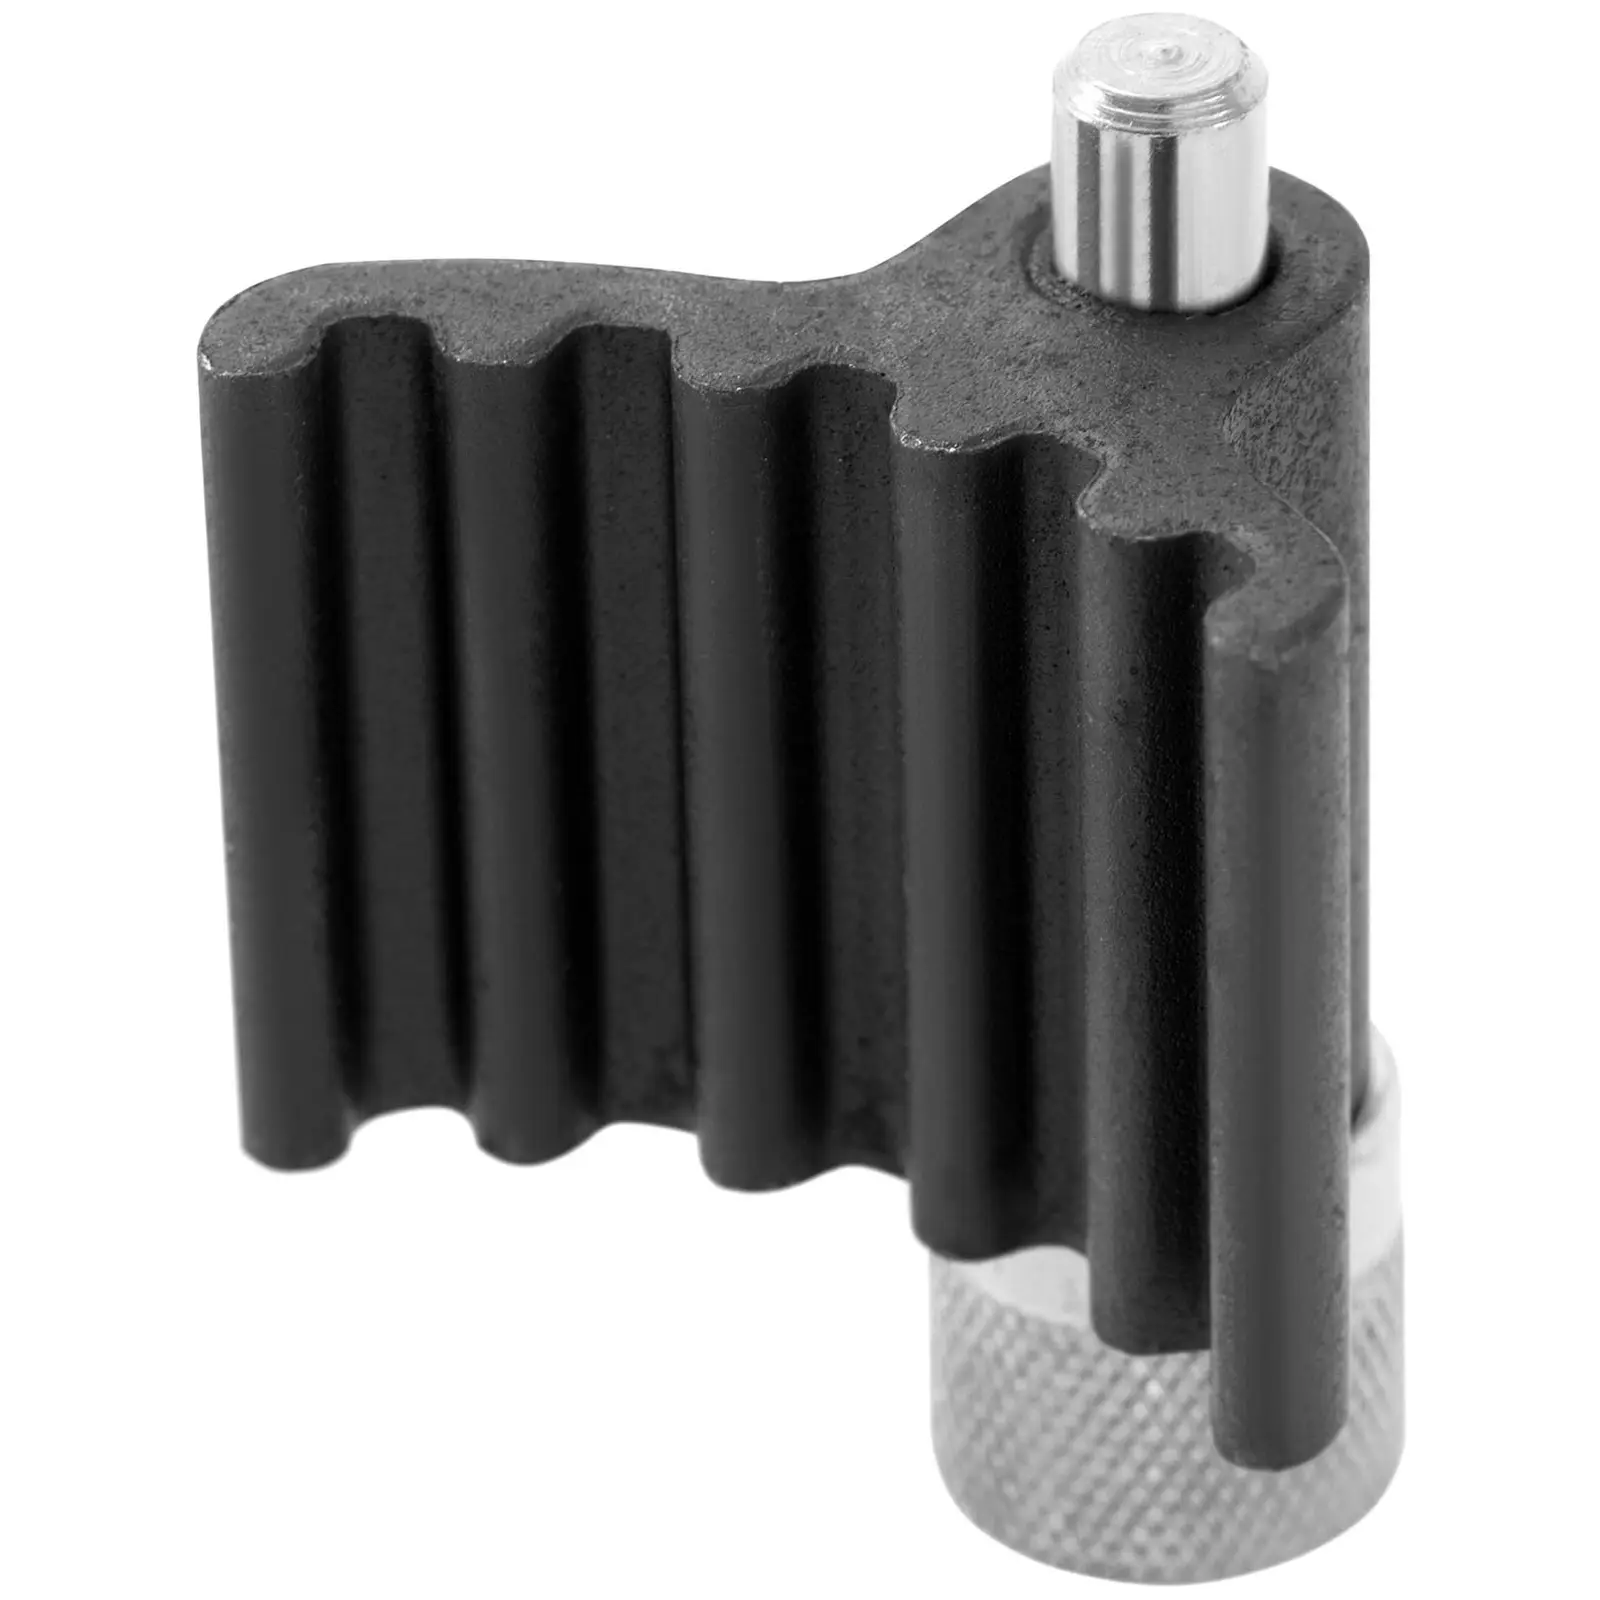 Kit calage distribution - Blocage de la poulie crantée du vilebrequin -  Pour moteurs Diesel - Compatible avec Audi, VW, Skoda, Ford Galaxy